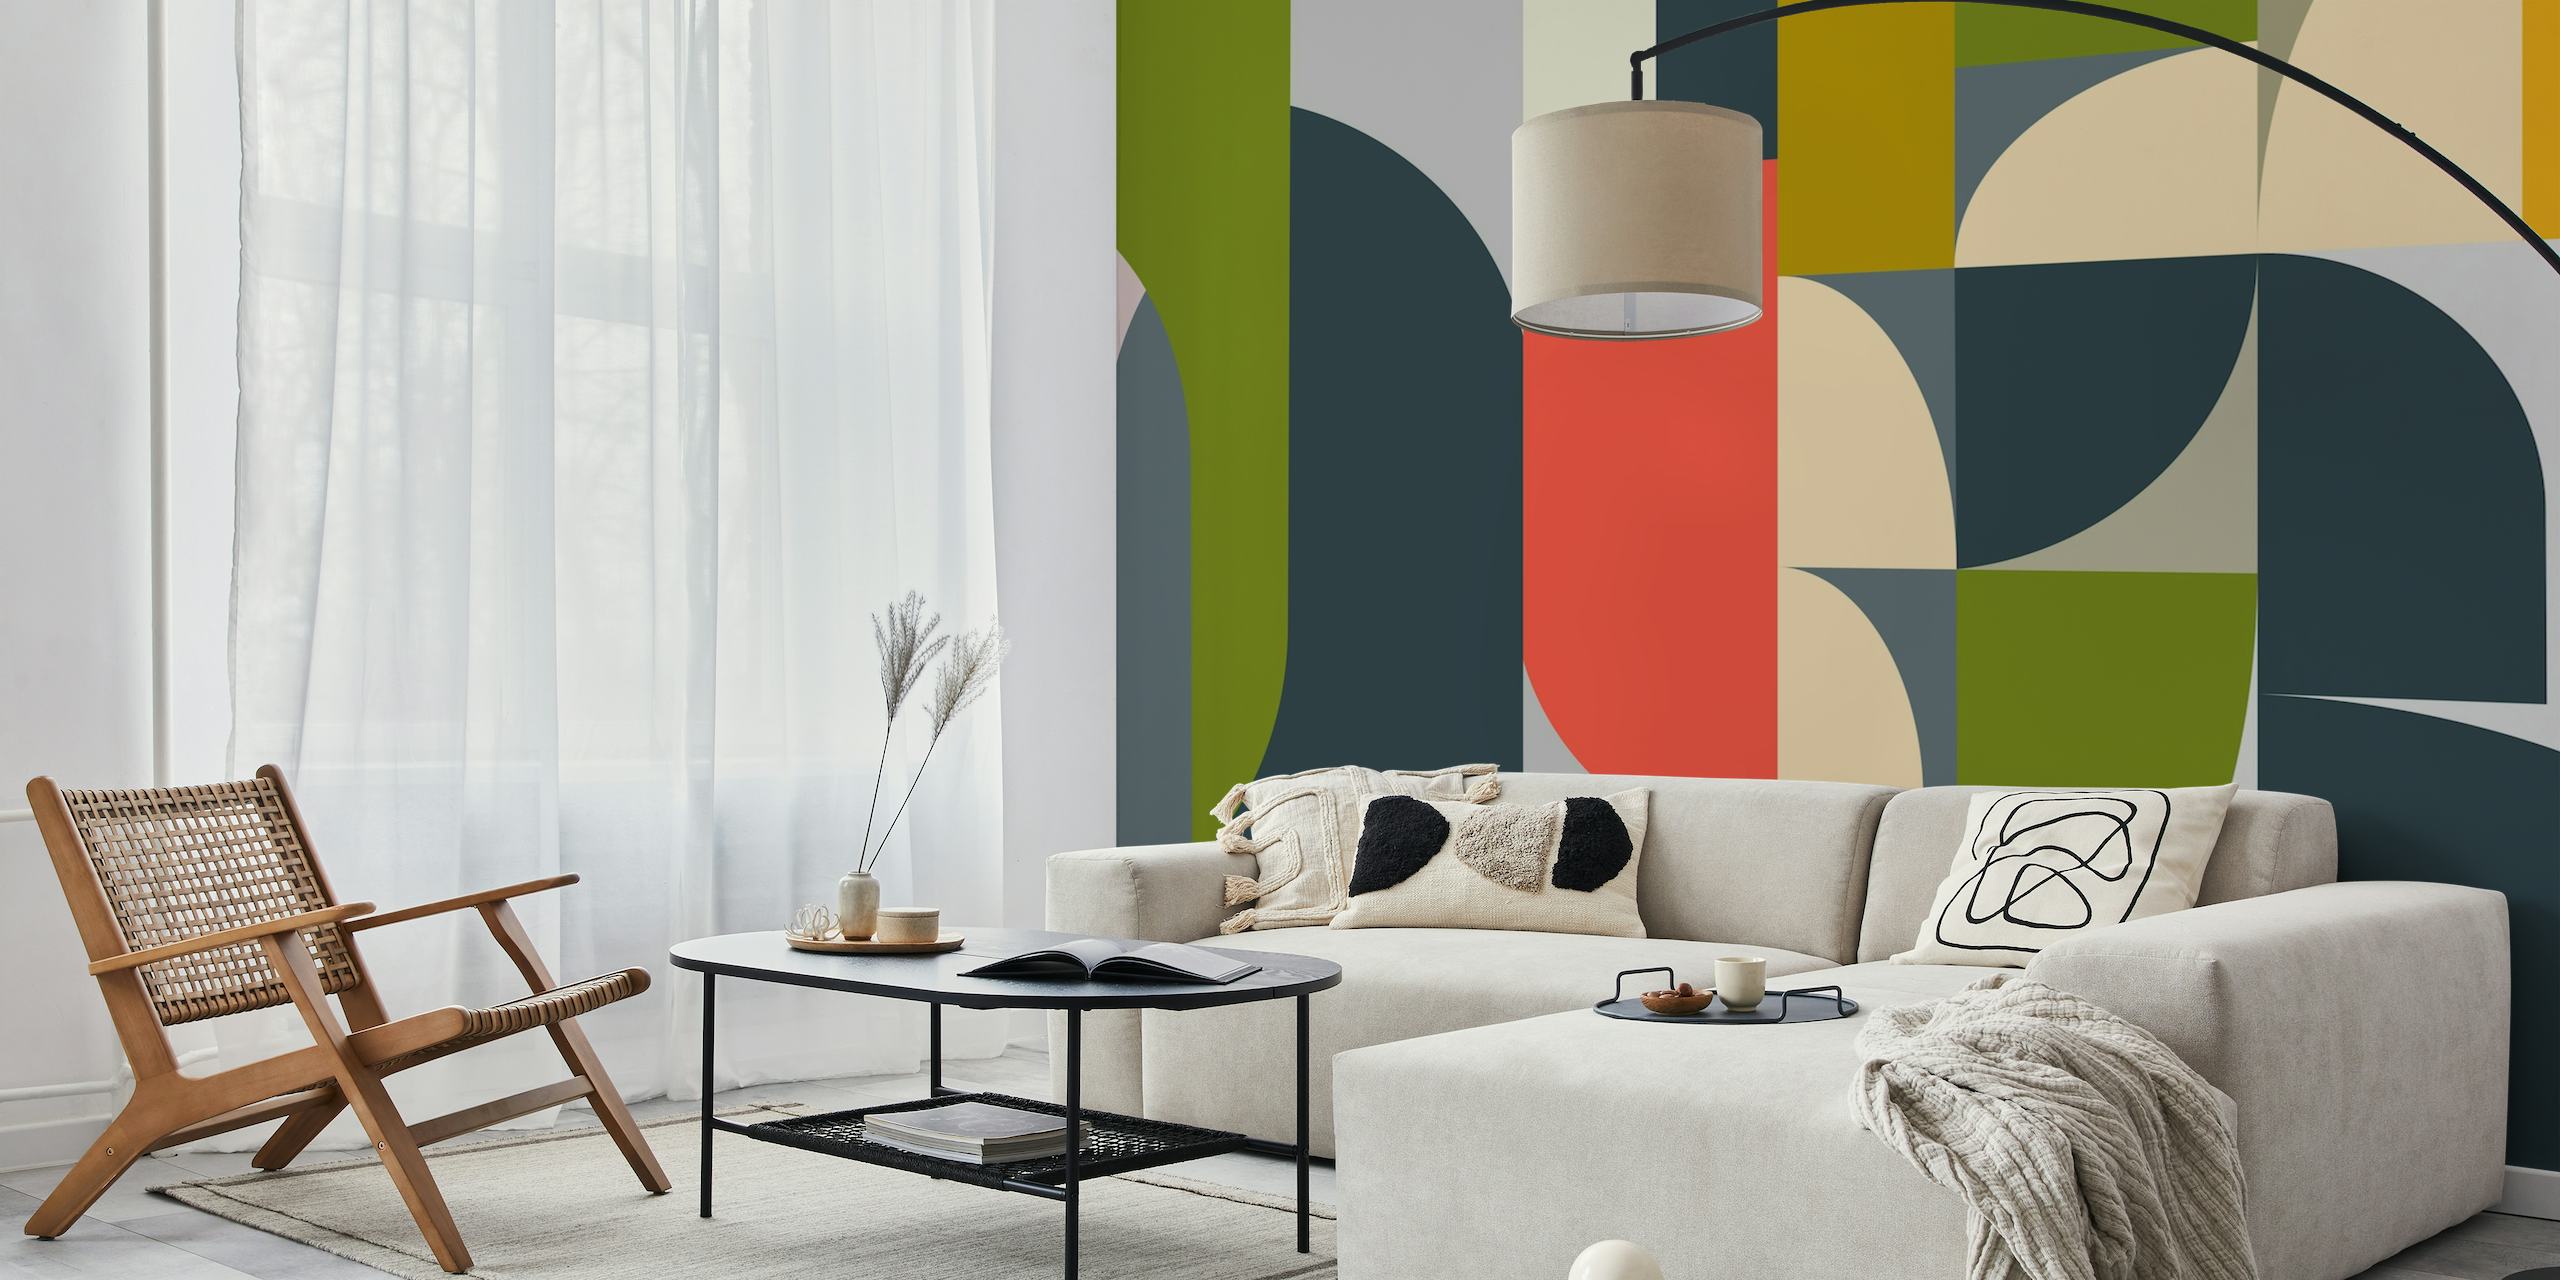 Moderne abstracte geometrische muurschildering met een samensmelting van vormen in gedempte kleuren